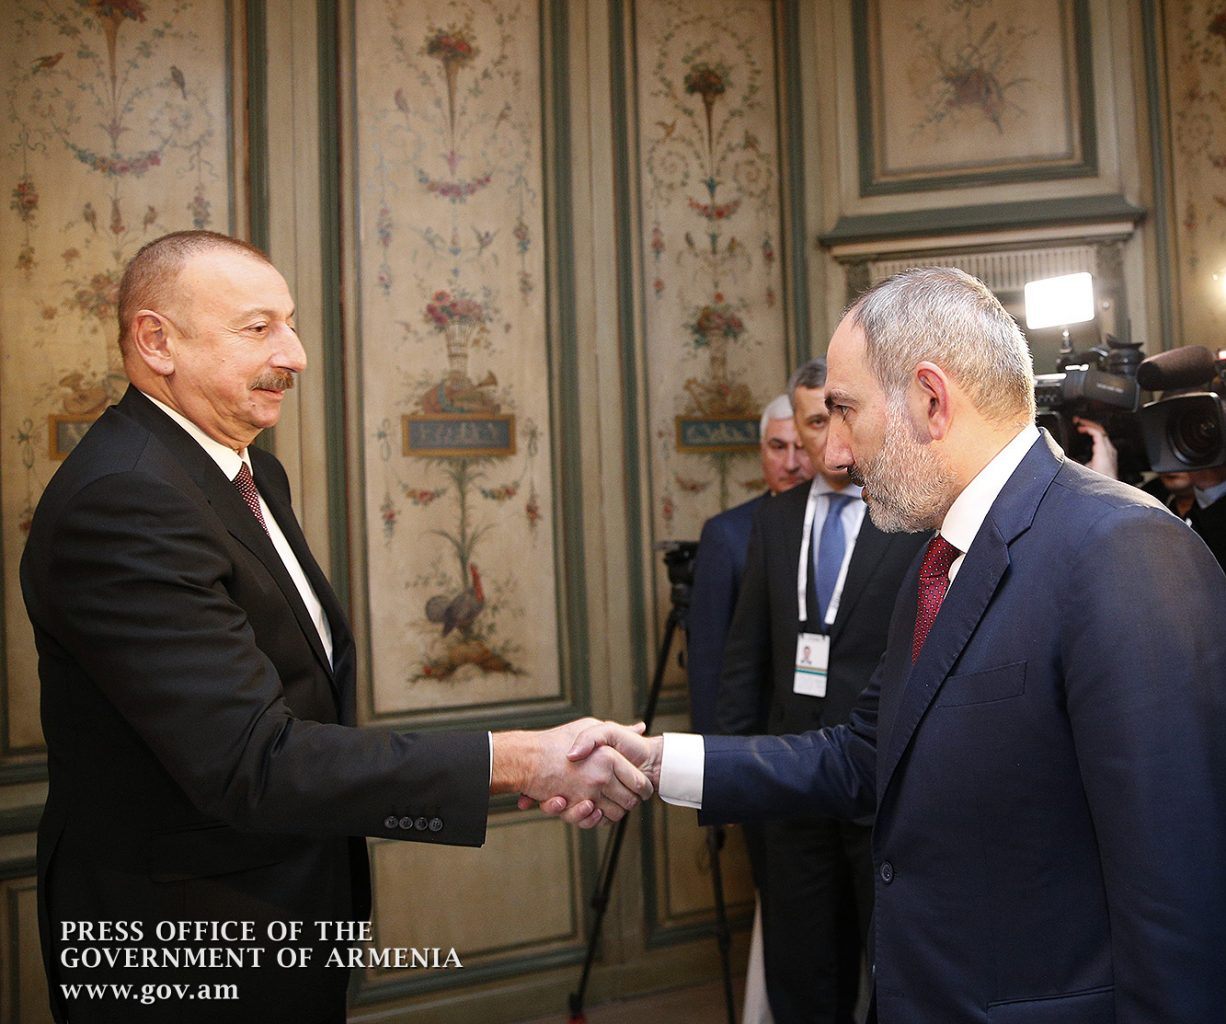 Алиев исключил возможность какого-либо статуса Карабаха